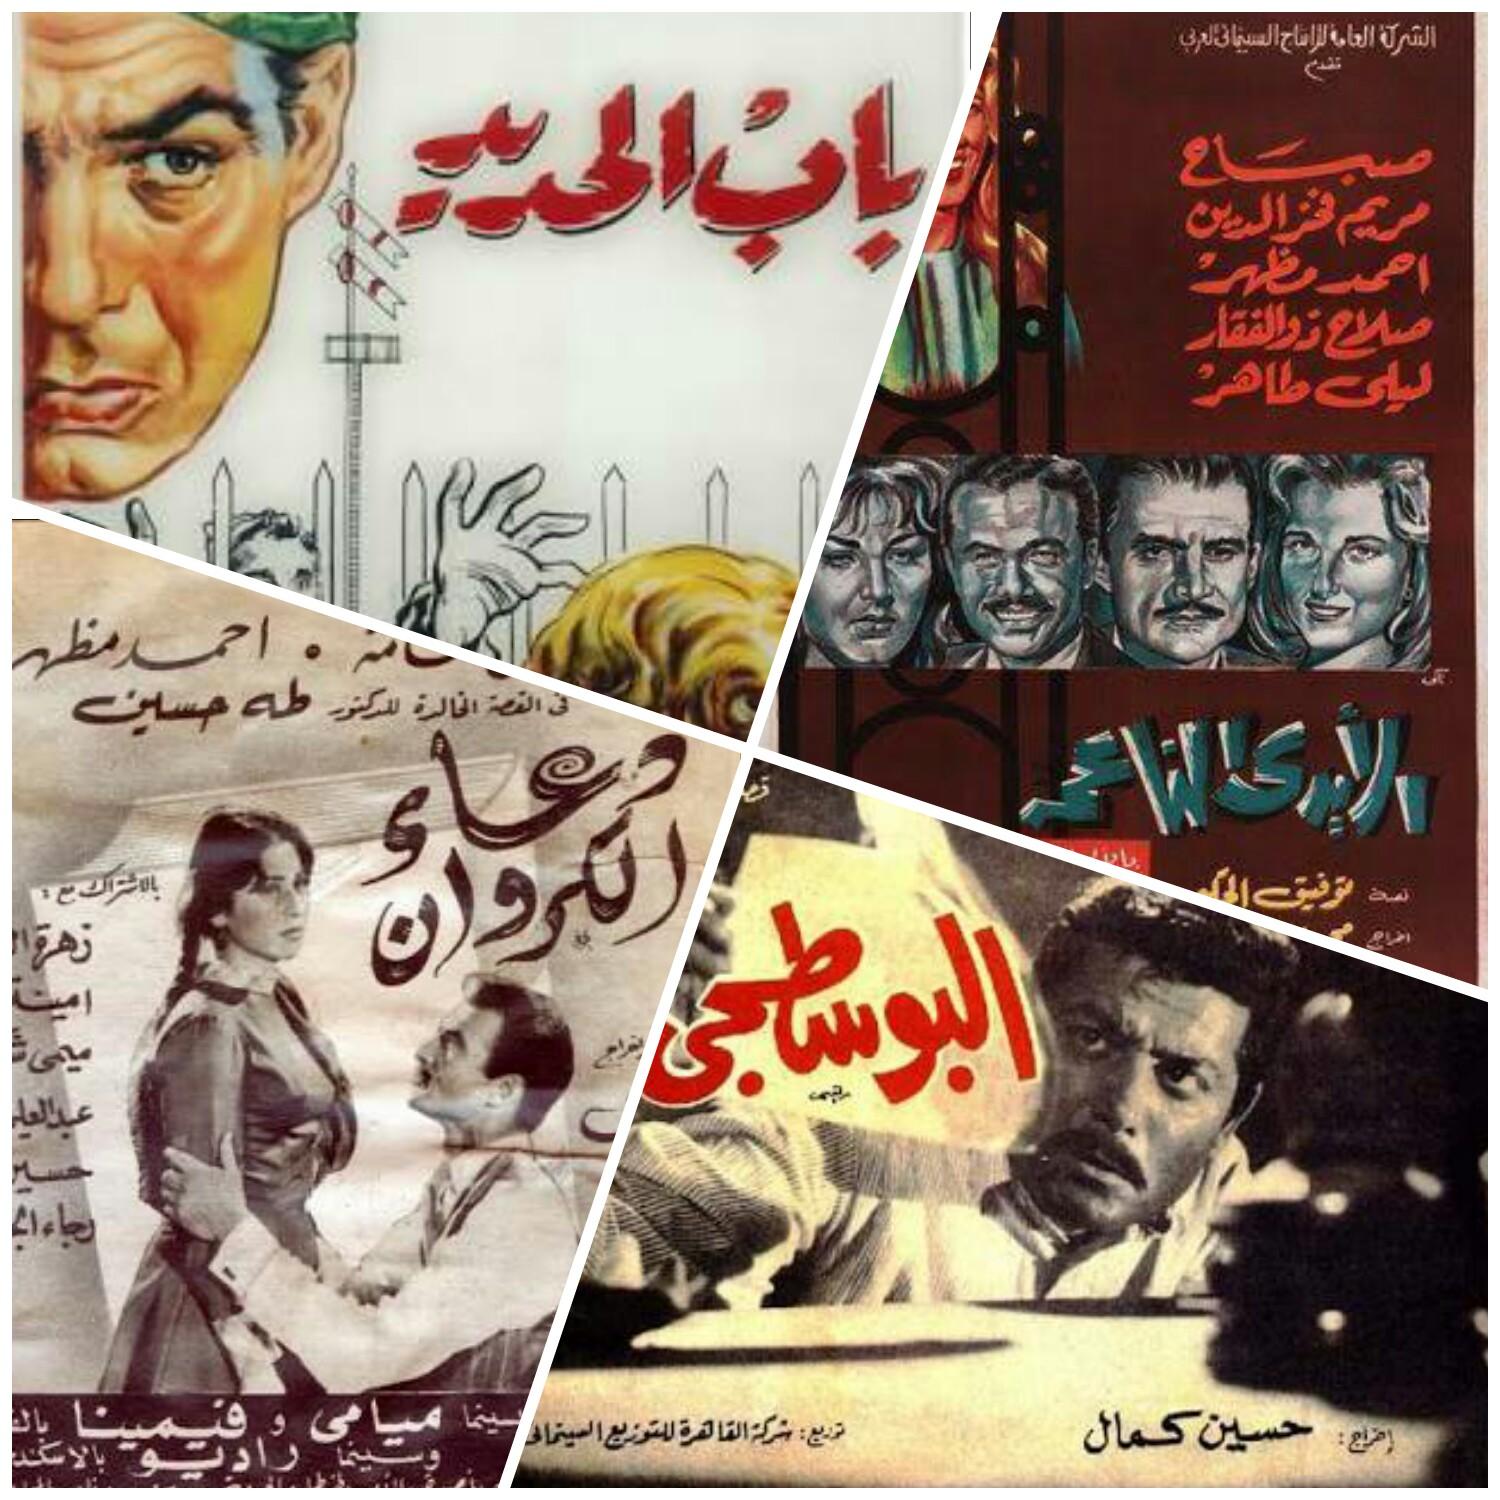 الموسيقى التصويرية في السينما المصرية